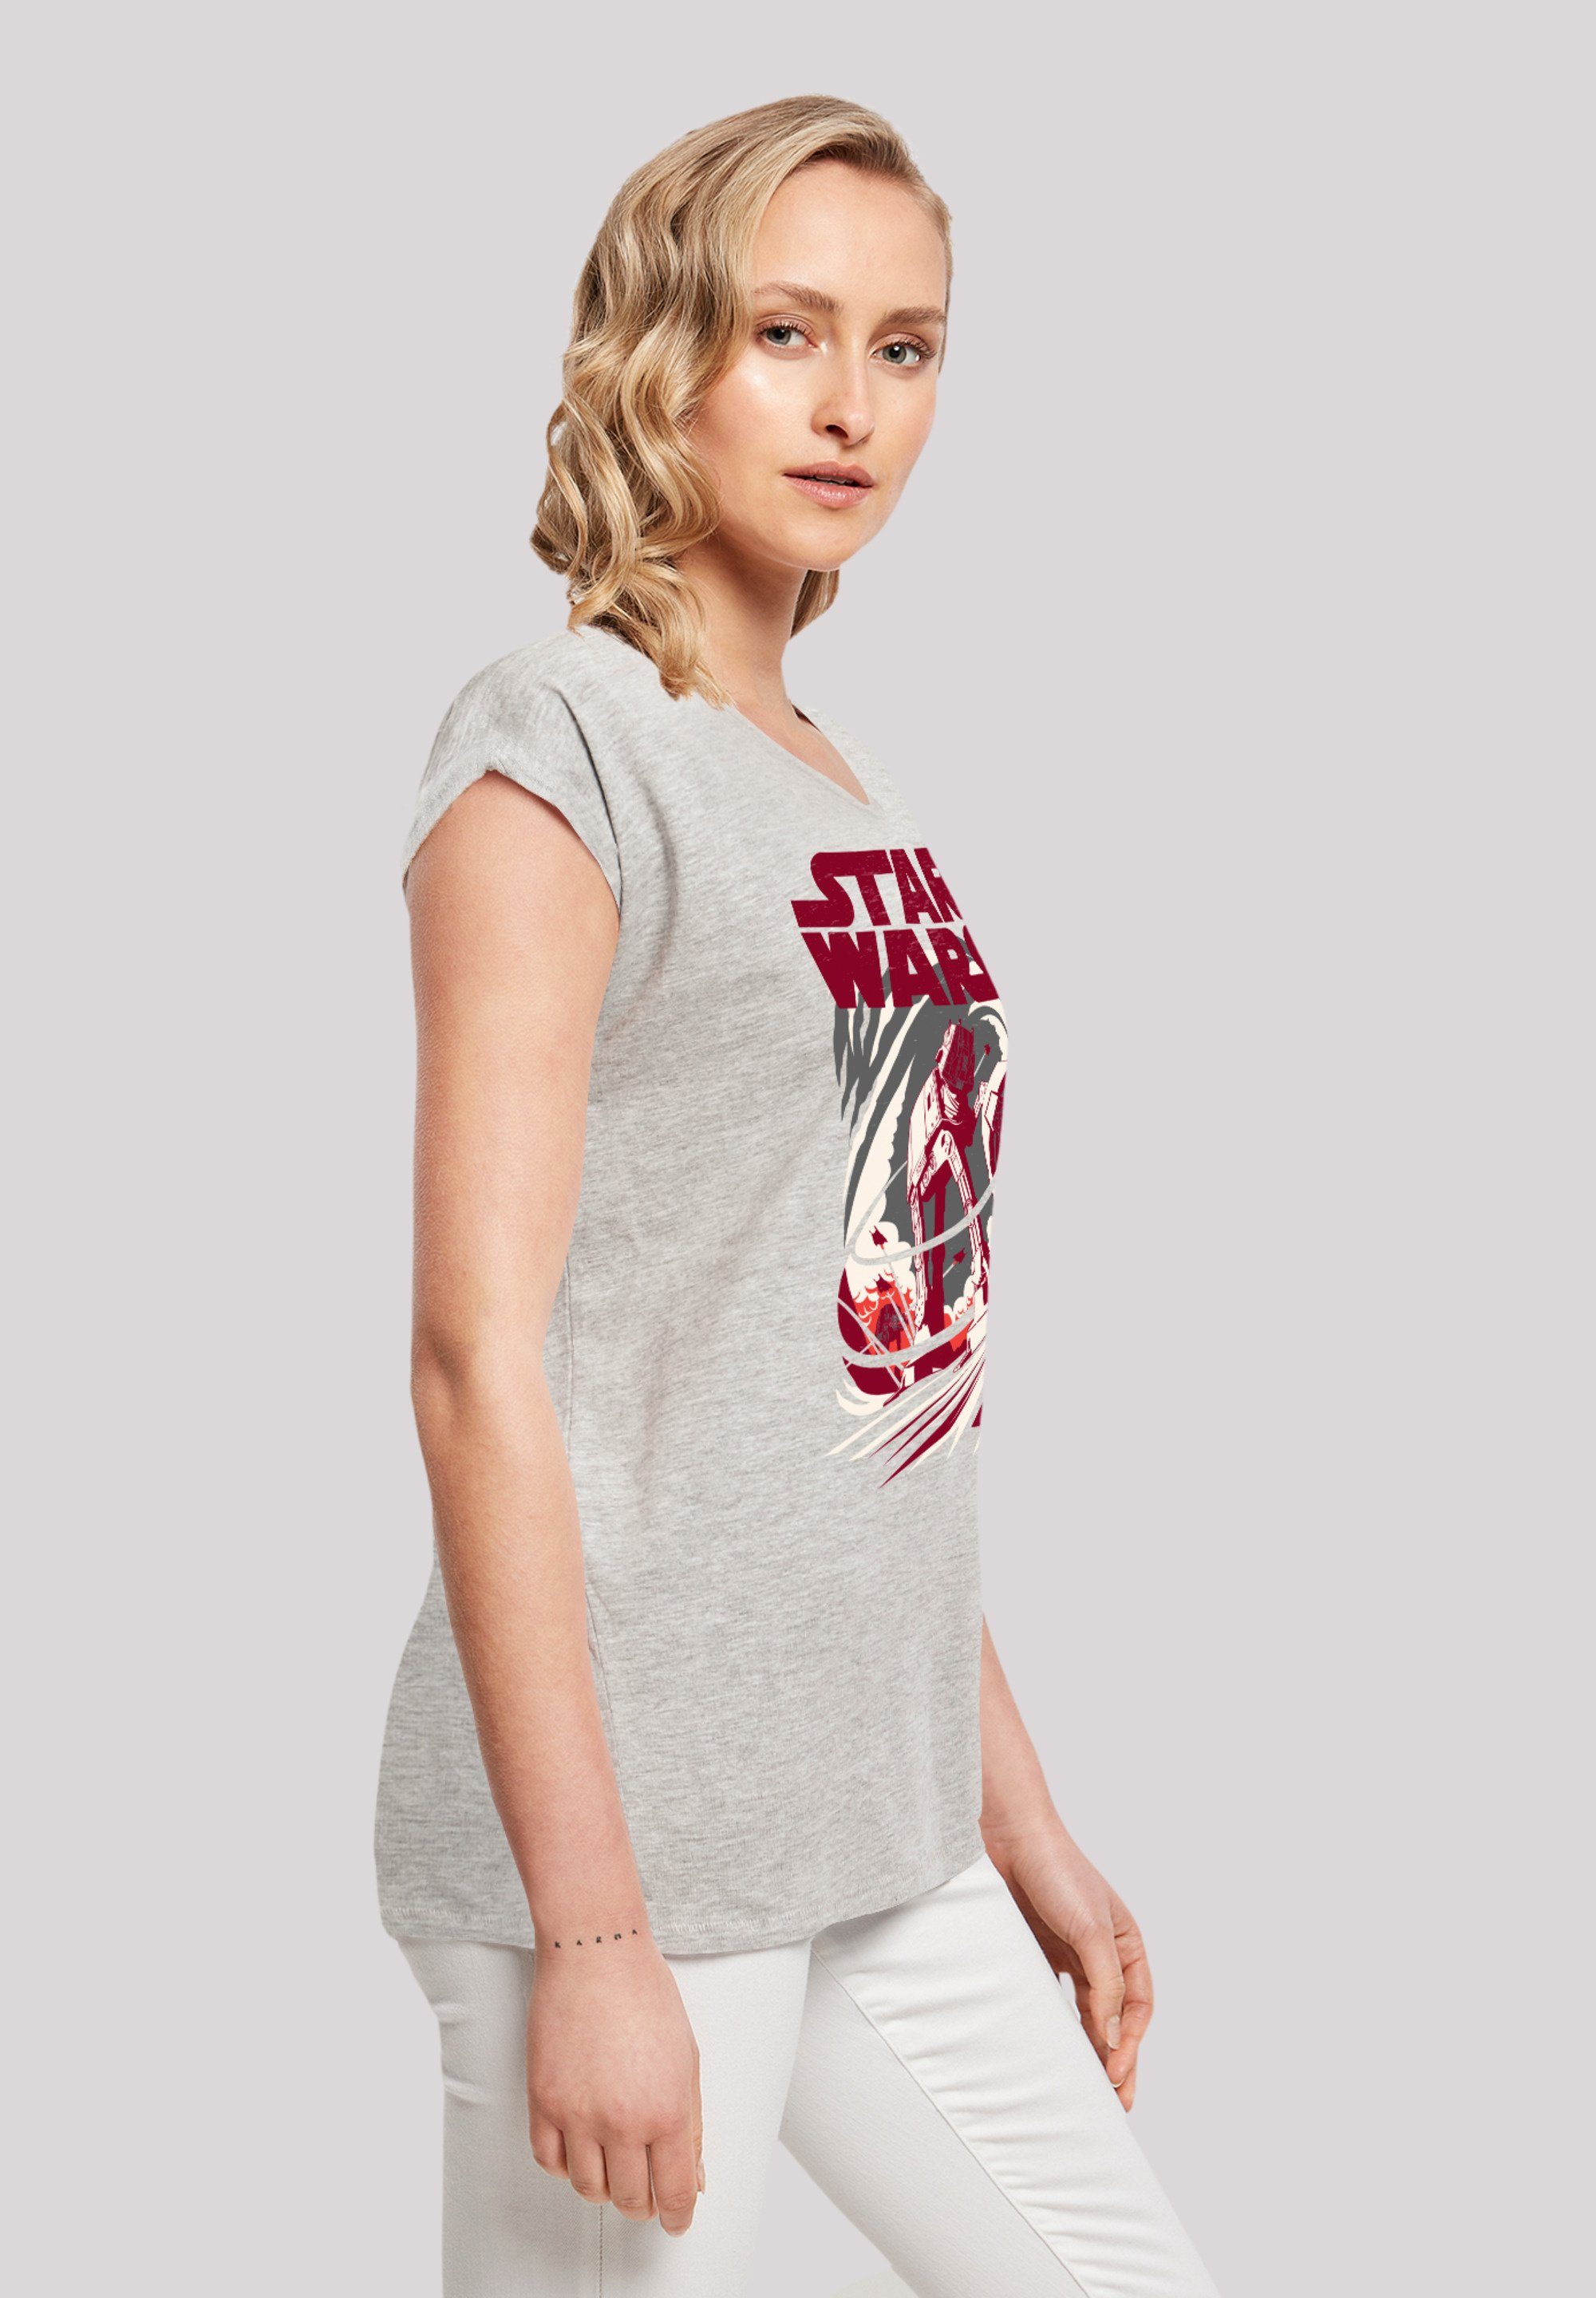 F4NT4STIC Premium Wars grey Qualität Turmoil Star heather T-Shirt